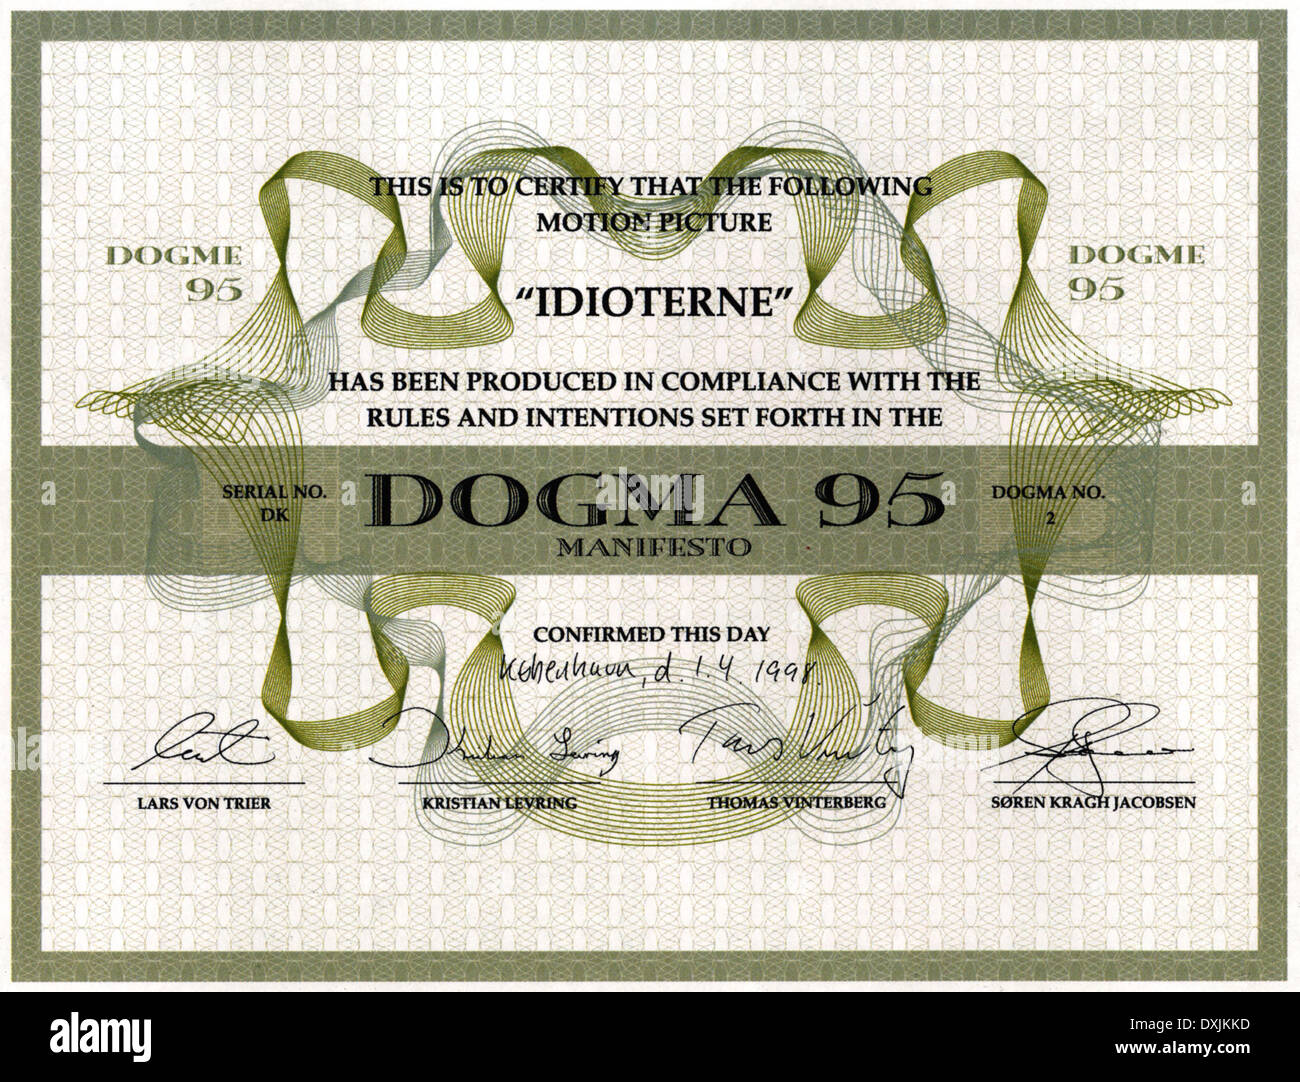 05 los-idiotas-den-swe-fr-it-neth-1998-certificado-dogma-95-dxjkkd